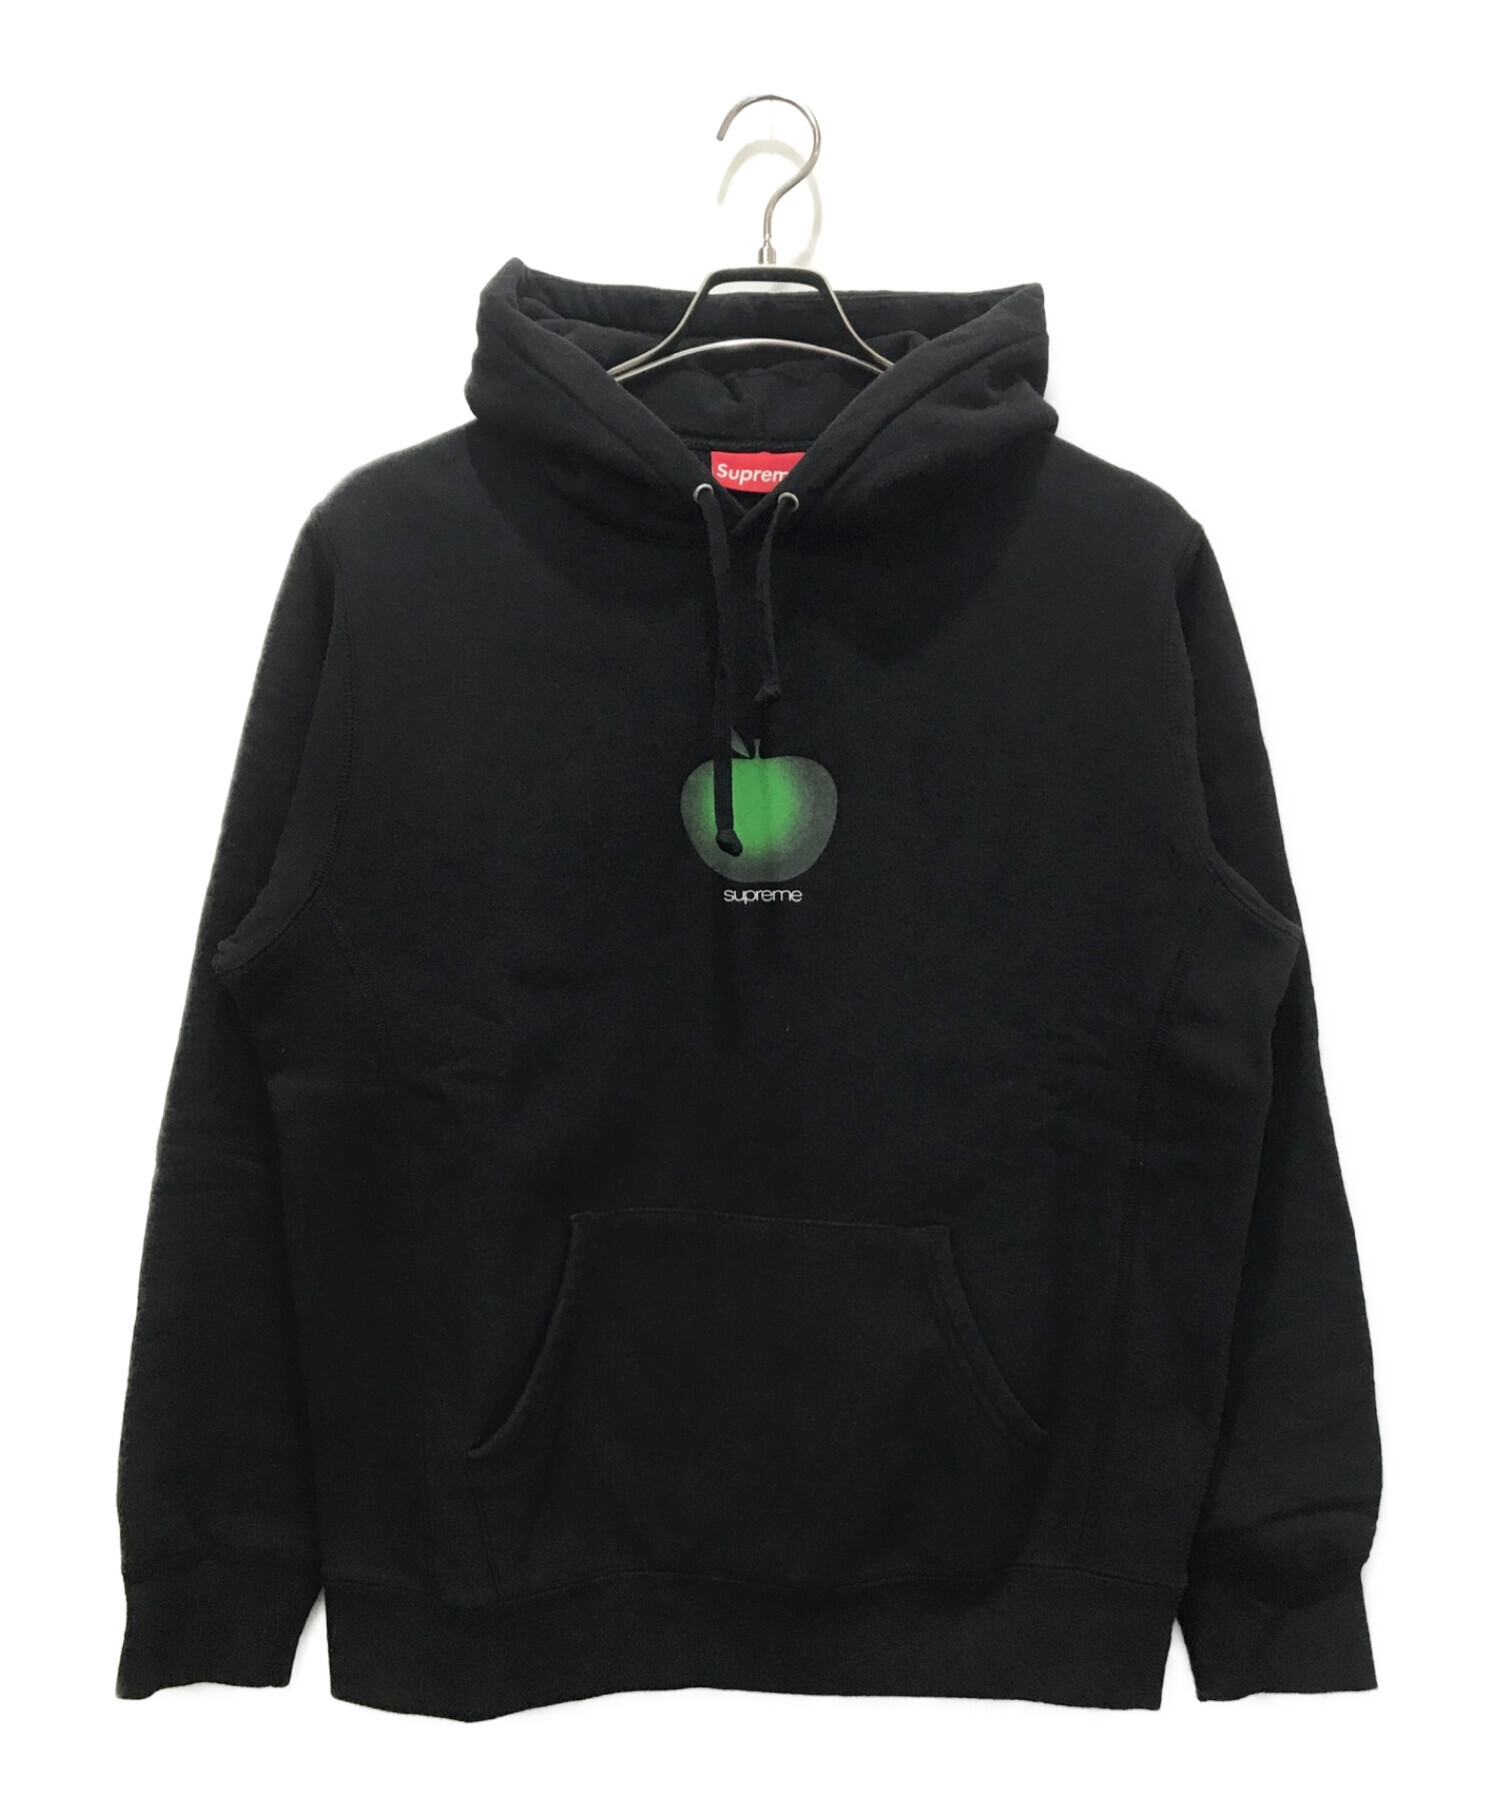 SUPREME (シュプリーム) Apple Hooded Sweatshirt ブラック サイズ:M